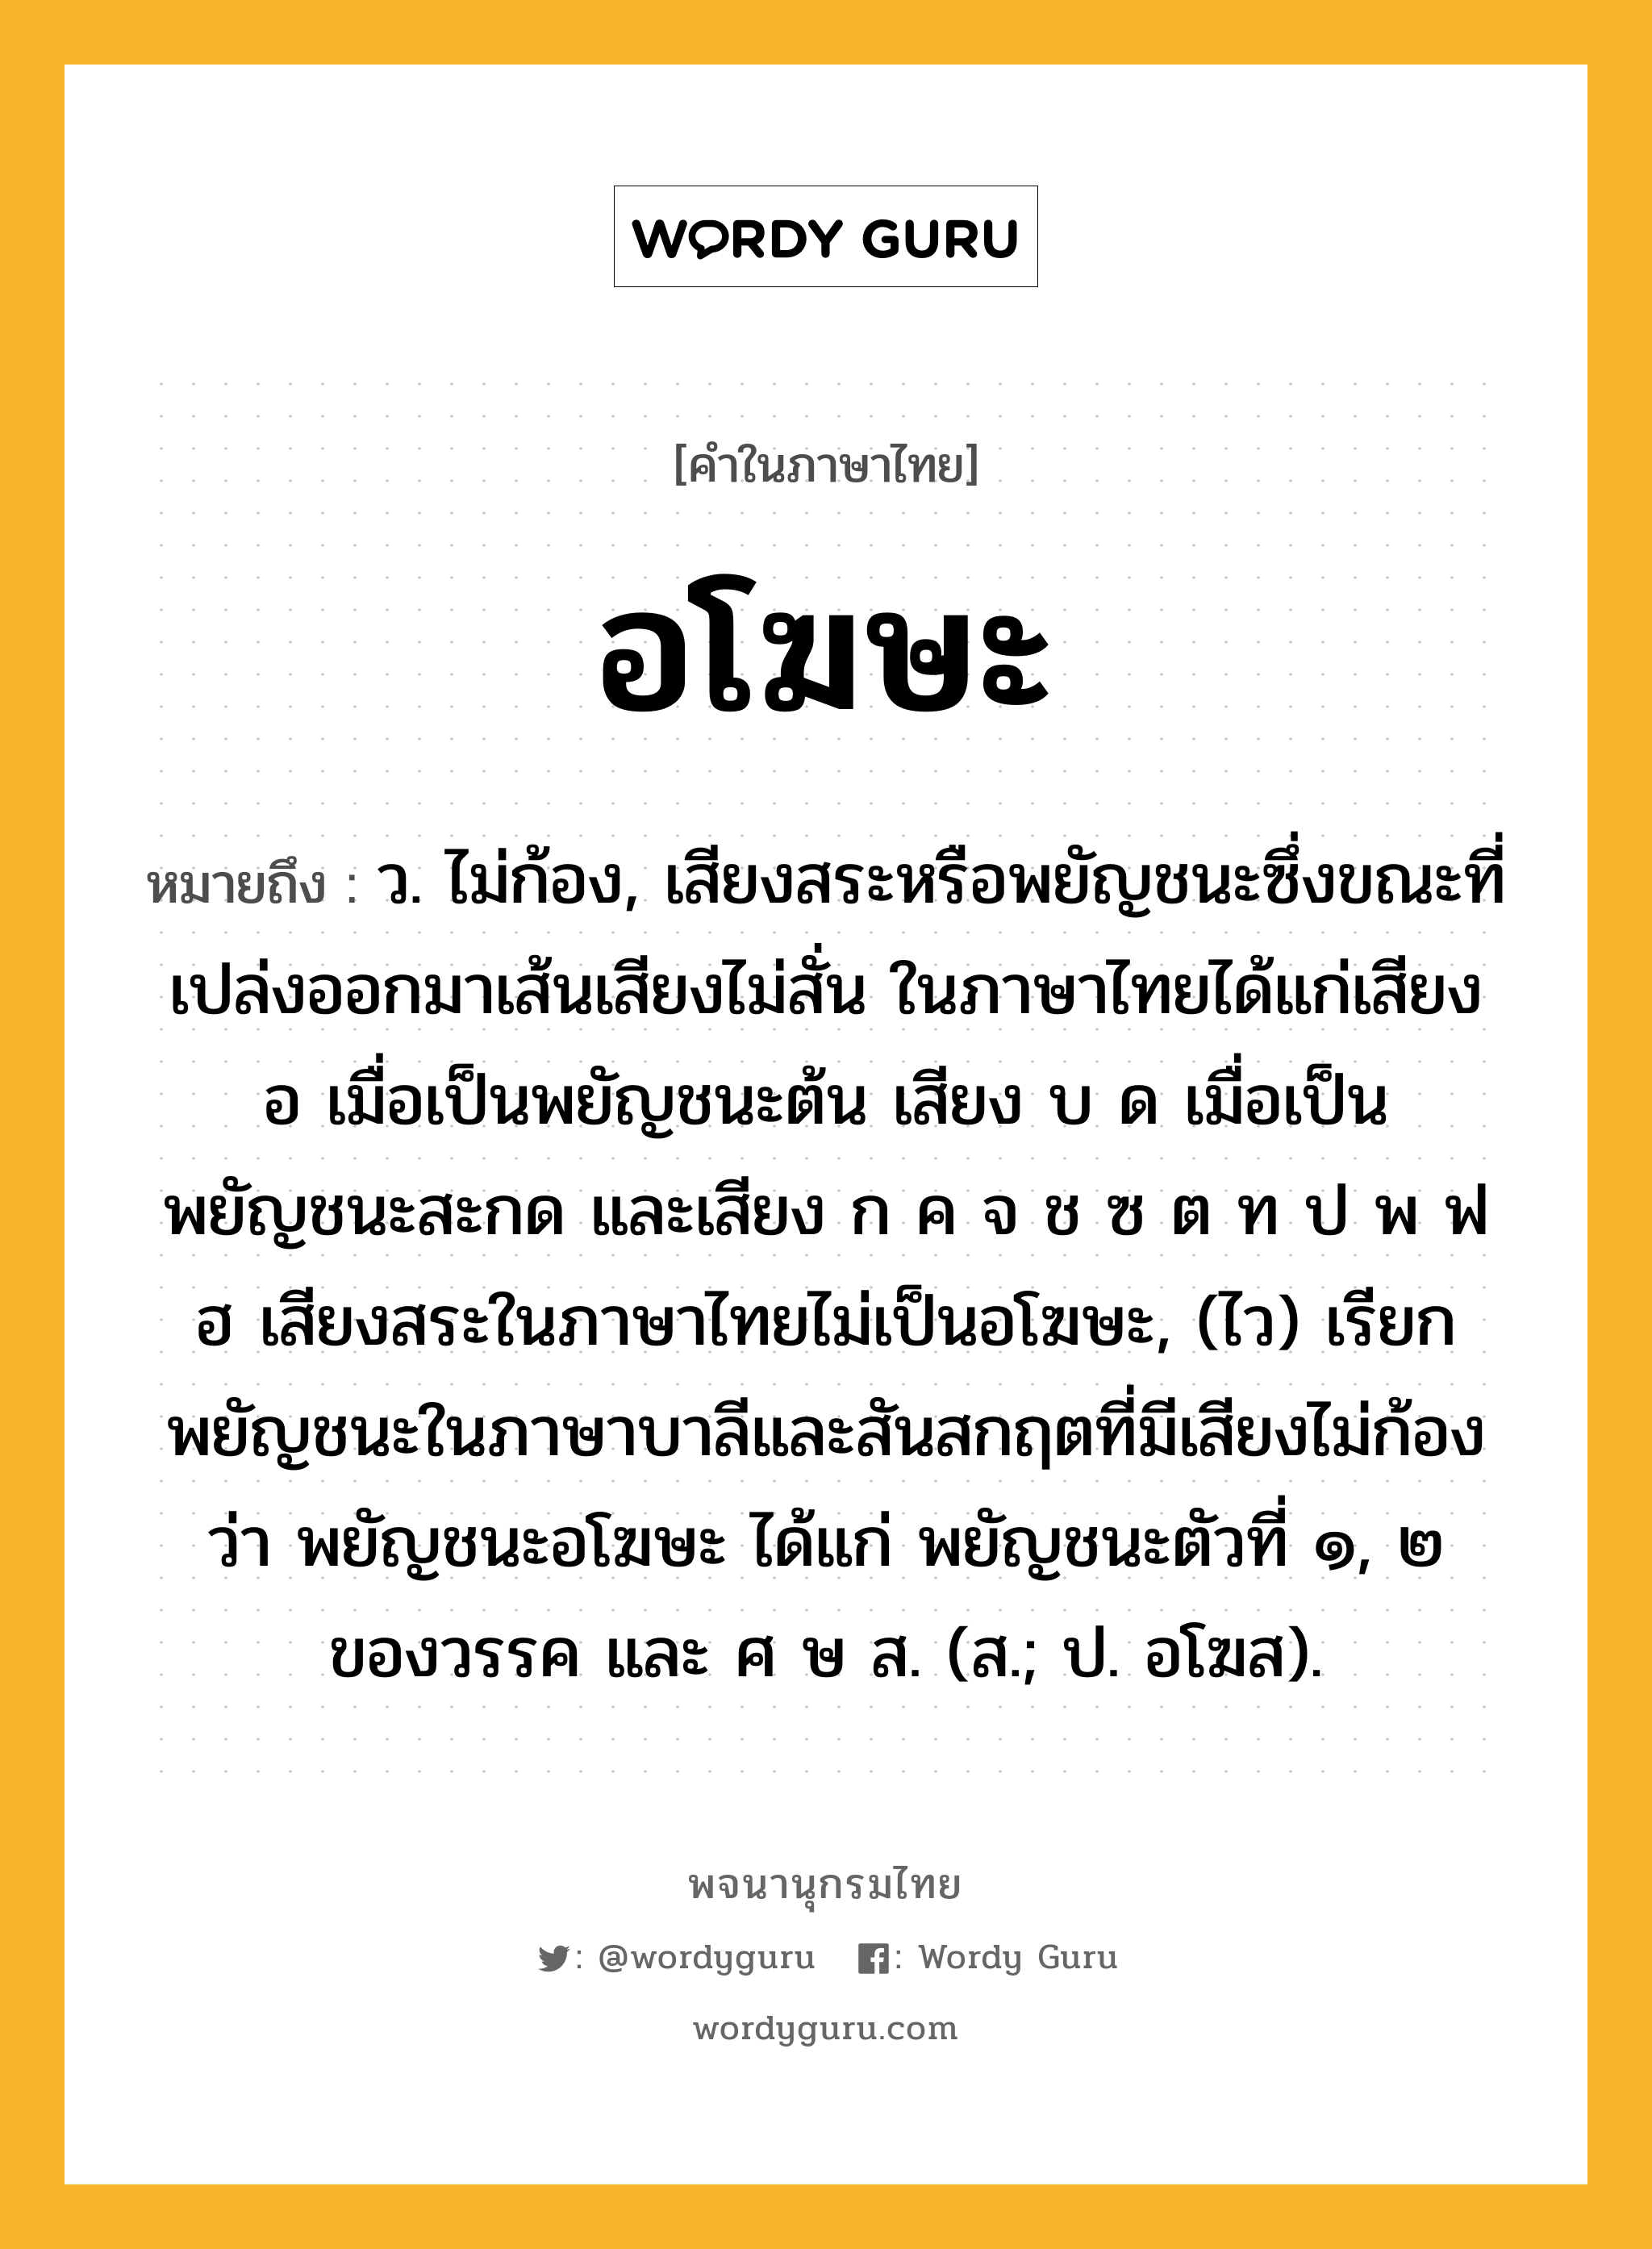 อโฆษะ ความหมาย หมายถึงอะไร?, คำในภาษาไทย อโฆษะ หมายถึง ว. ไม่ก้อง, เสียงสระหรือพยัญชนะซึ่งขณะที่เปล่งออกมาเส้นเสียงไม่สั่น ในภาษาไทยได้แก่เสียง อ เมื่อเป็นพยัญชนะต้น เสียง บ ด เมื่อเป็นพยัญชนะสะกด และเสียง ก ค จ ช ซ ต ท ป พ ฟ ฮ เสียงสระในภาษาไทยไม่เป็นอโฆษะ, (ไว) เรียกพยัญชนะในภาษาบาลีและสันสกฤตที่มีเสียงไม่ก้องว่า พยัญชนะอโฆษะ ได้แก่ พยัญชนะตัวที่ ๑, ๒ ของวรรค และ ศ ษ ส. (ส.; ป. อโฆส).